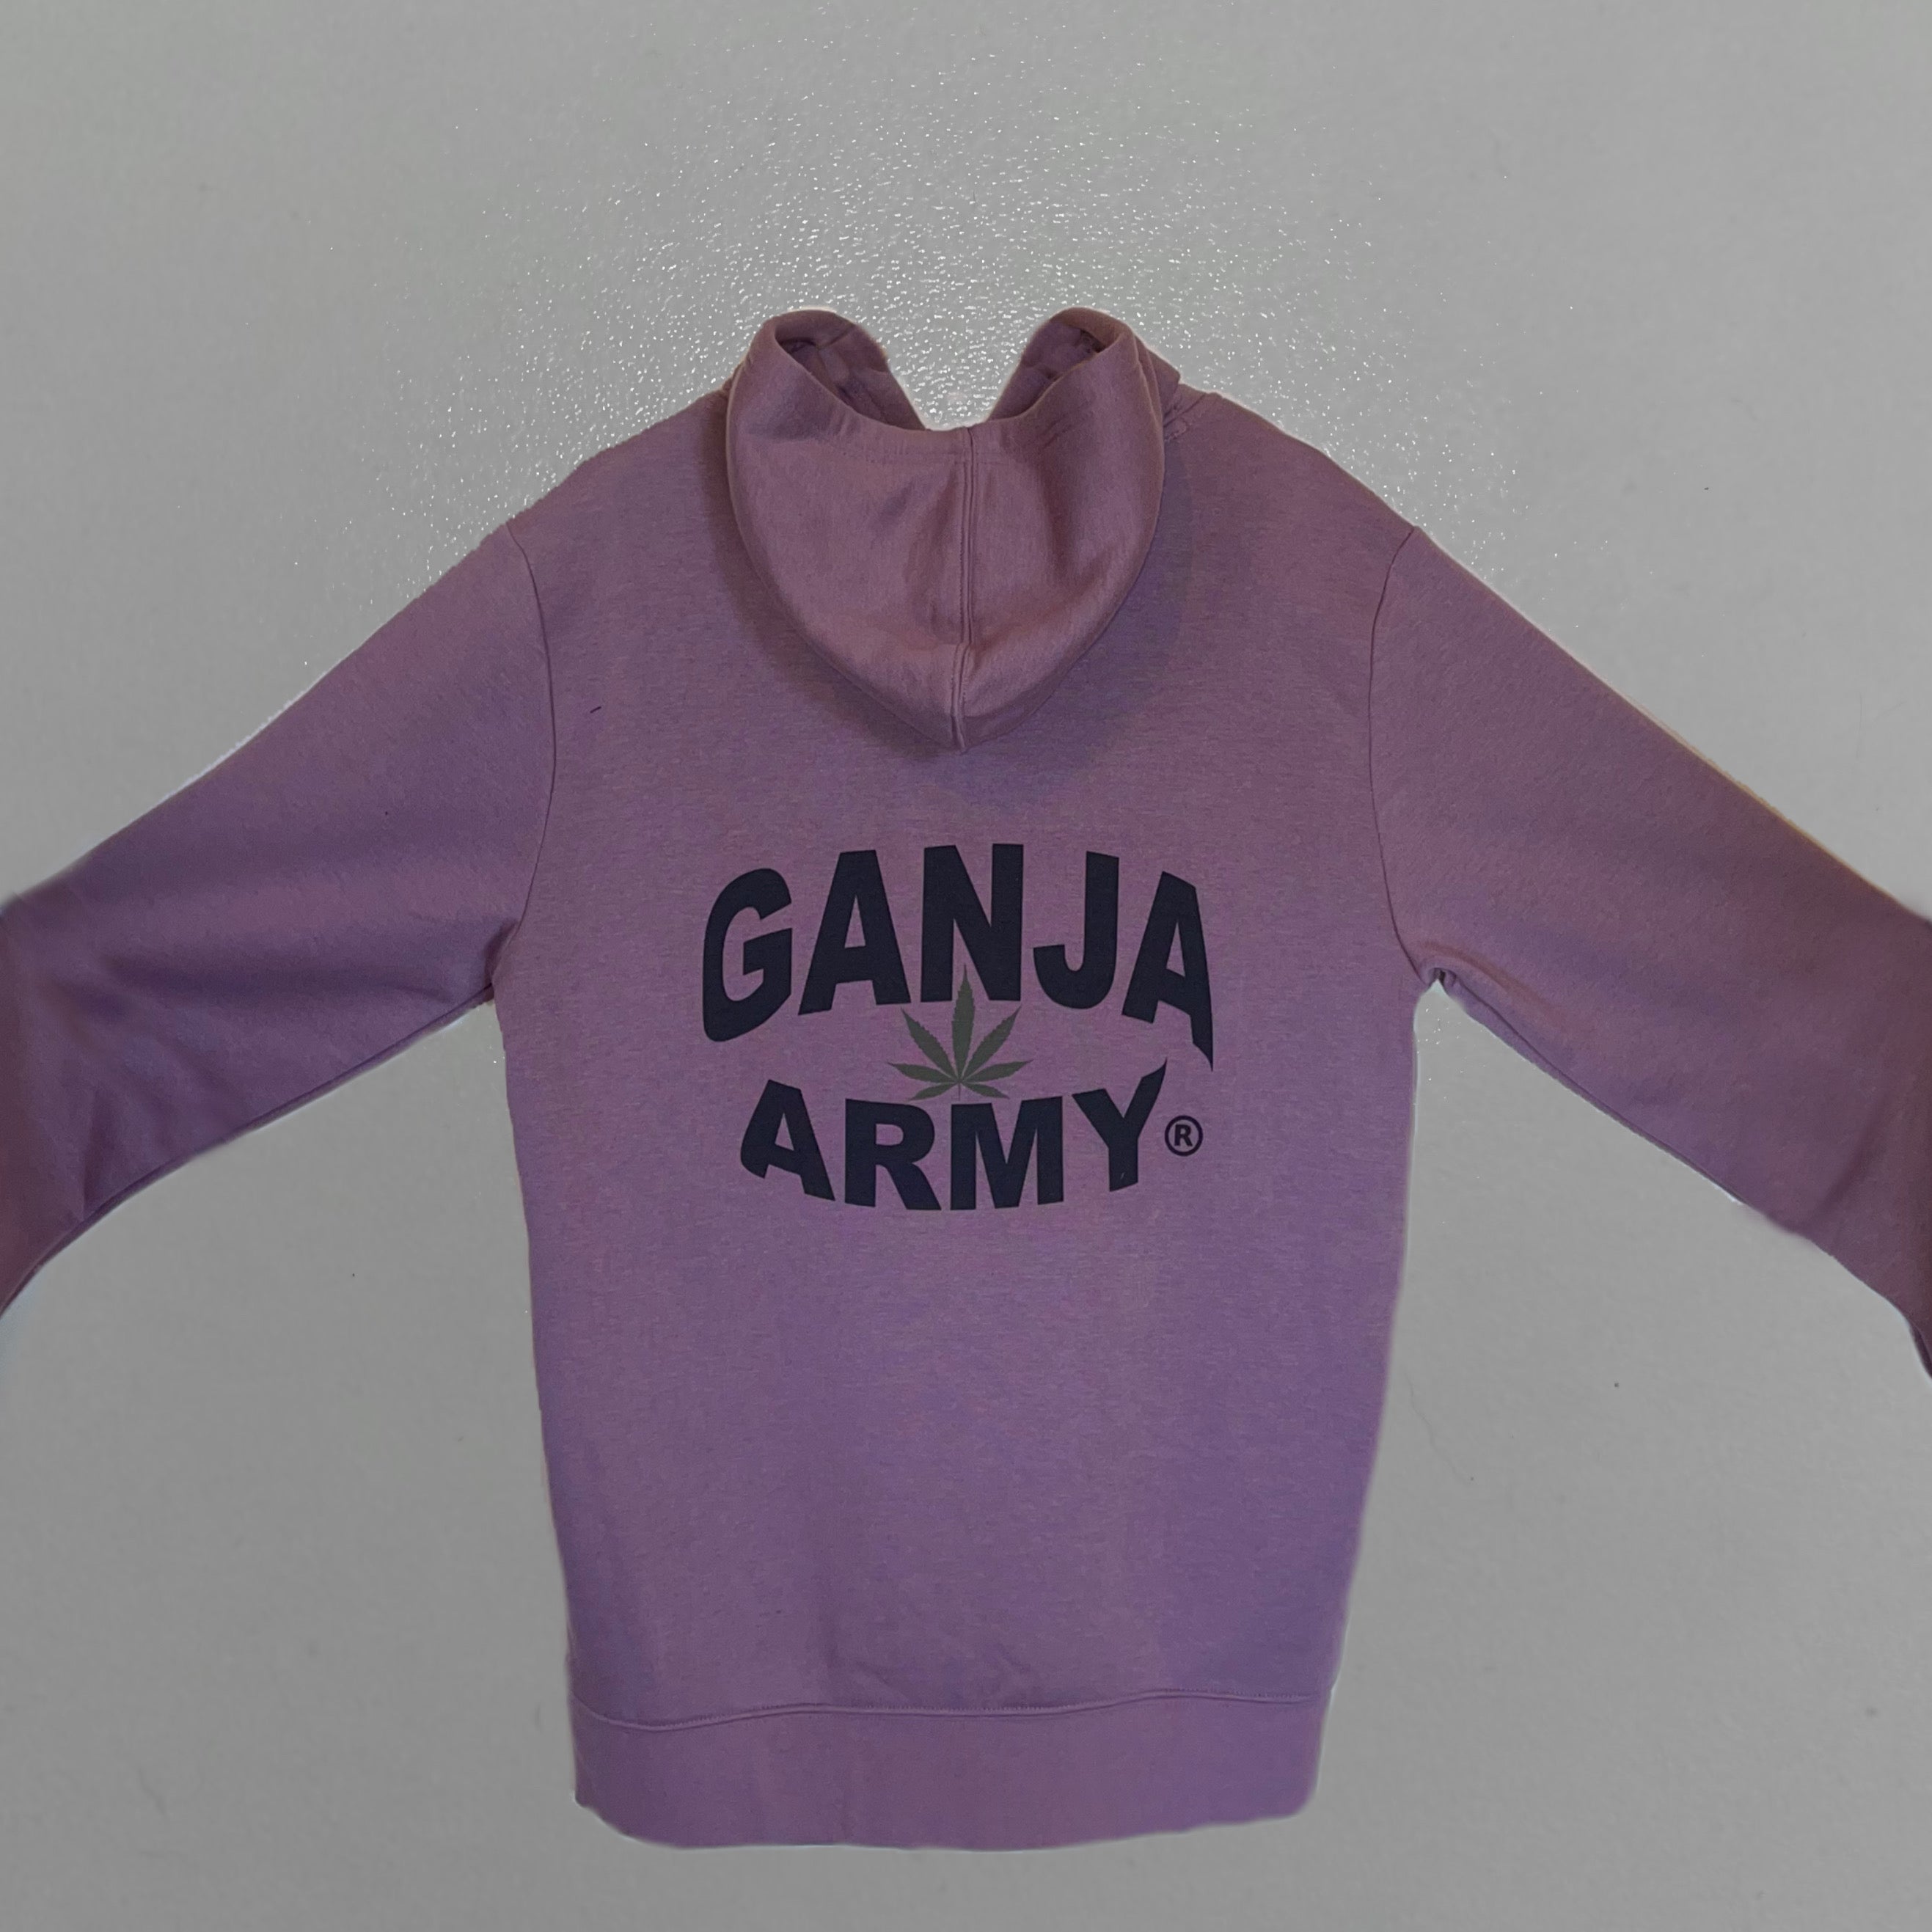 Ganja Army® Hoodies